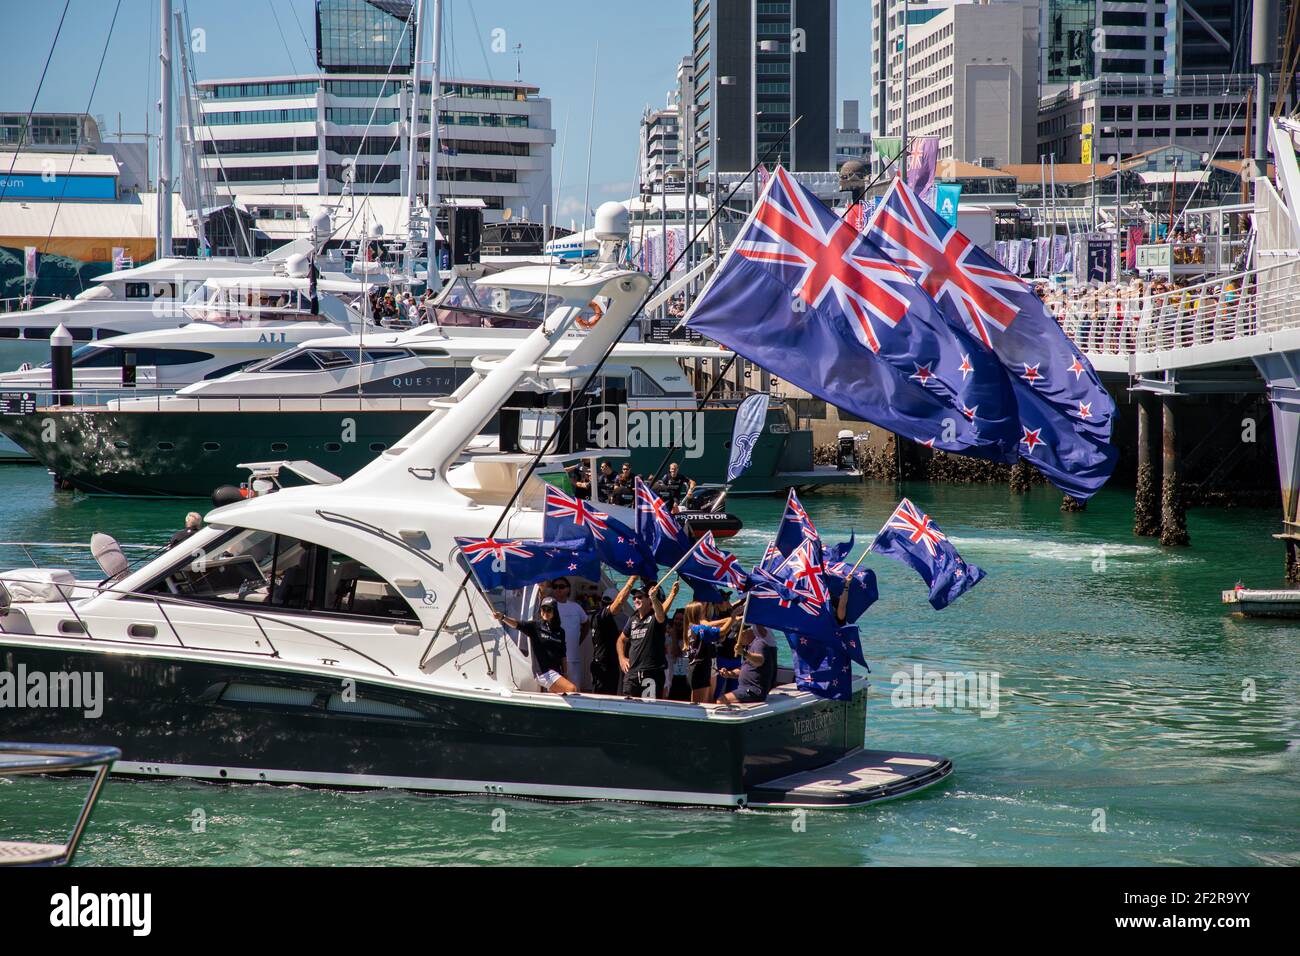 Auckland, Neuseeland. März 2021, 13th. Der America’s Cup 36th wird von PRADA, New Zealand Supporters auf ihren Booten präsentiert, die den Viaduct Harbour verlassen. Auckland, Neu Zealand,13th März 2021. Kredit - Neil Farrin/Alamy Live Nachrichten Stockfoto